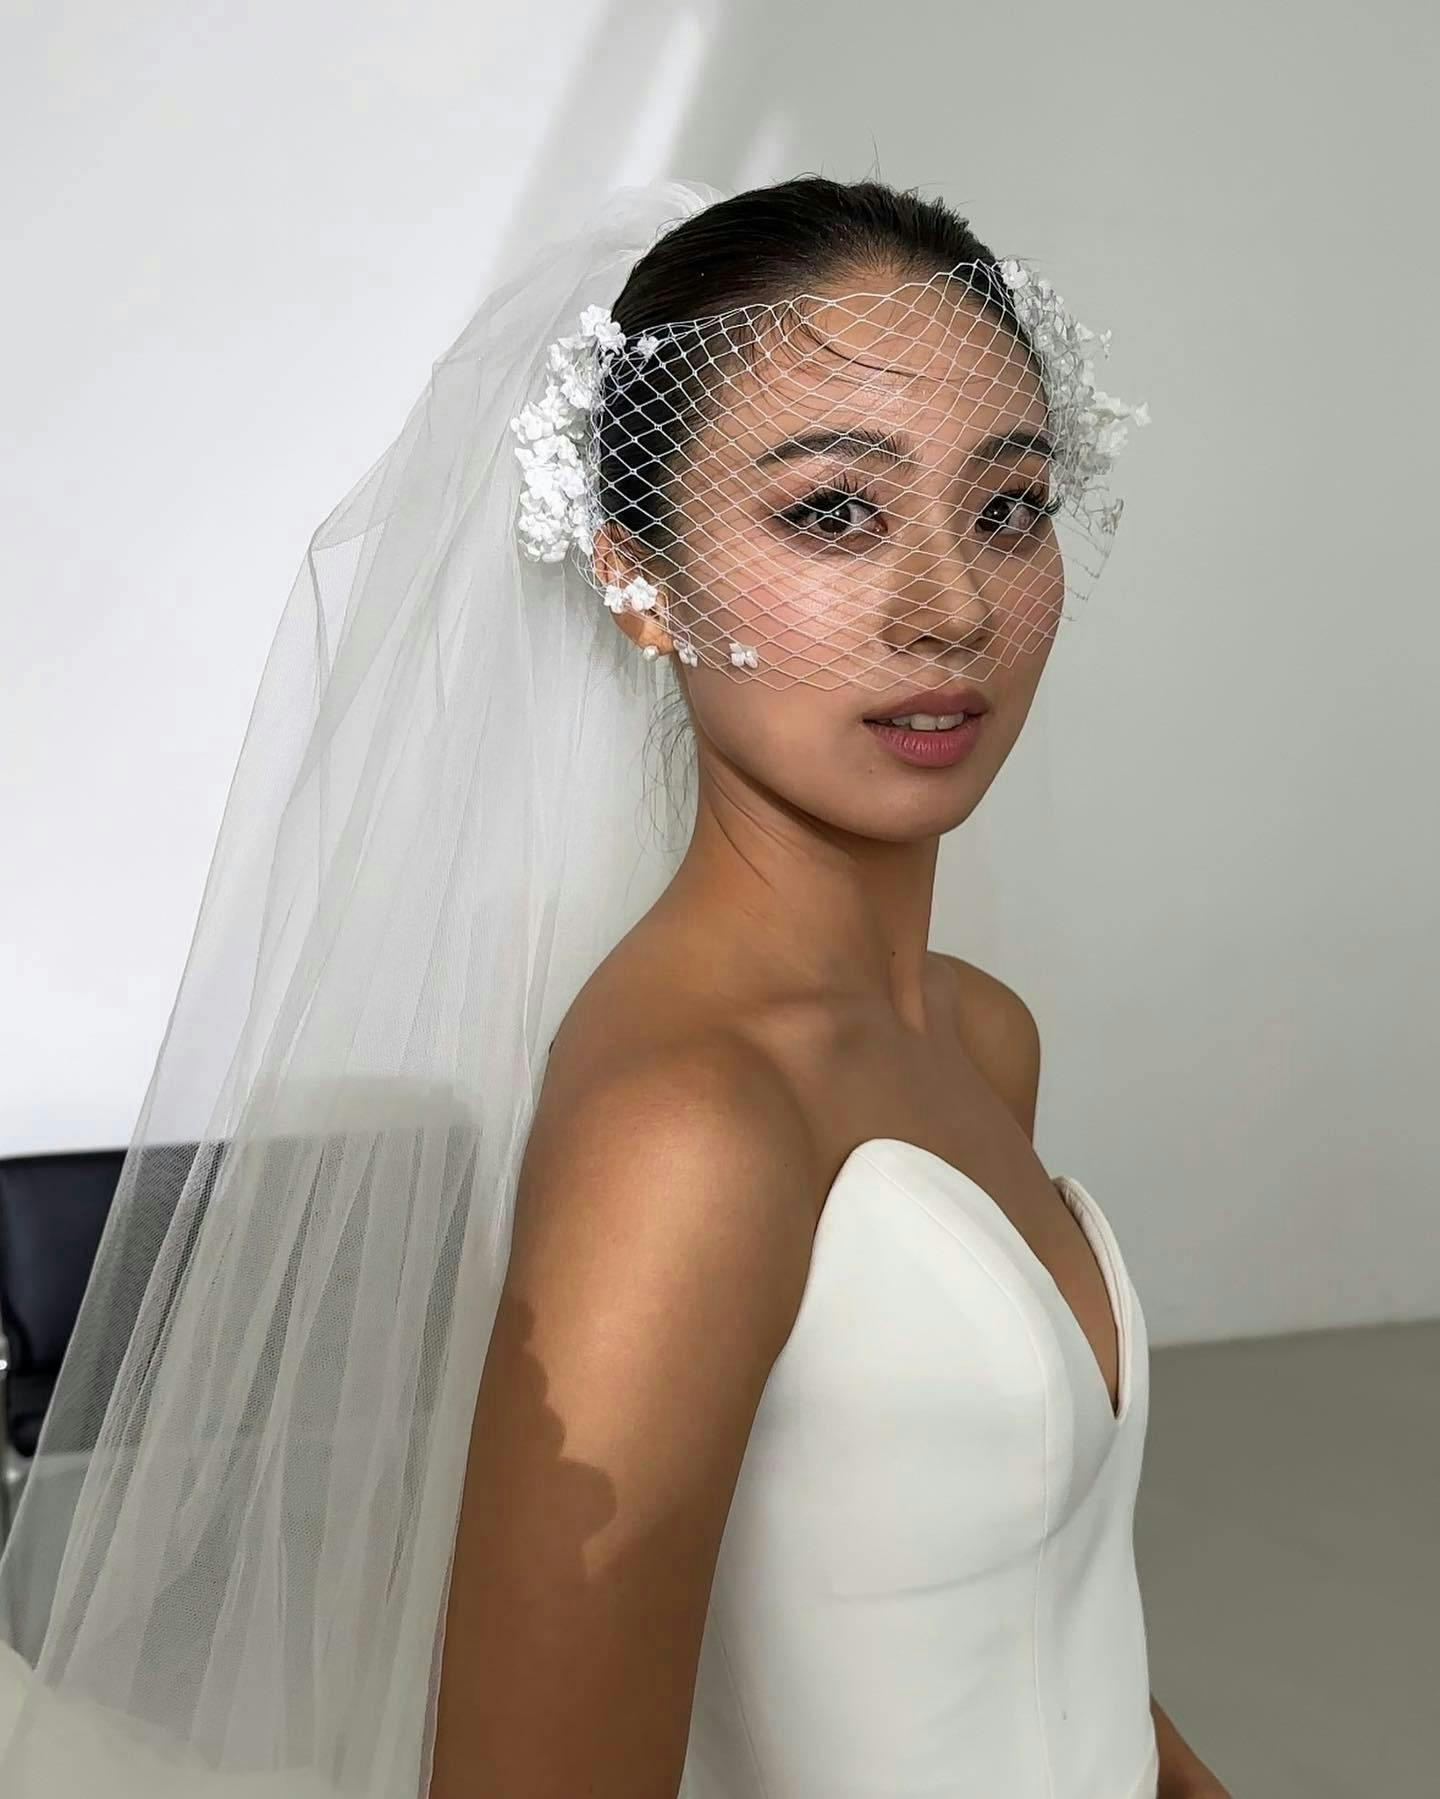 clothing veil bridal veil dress fashion formal wear gown person wedding wedding gown